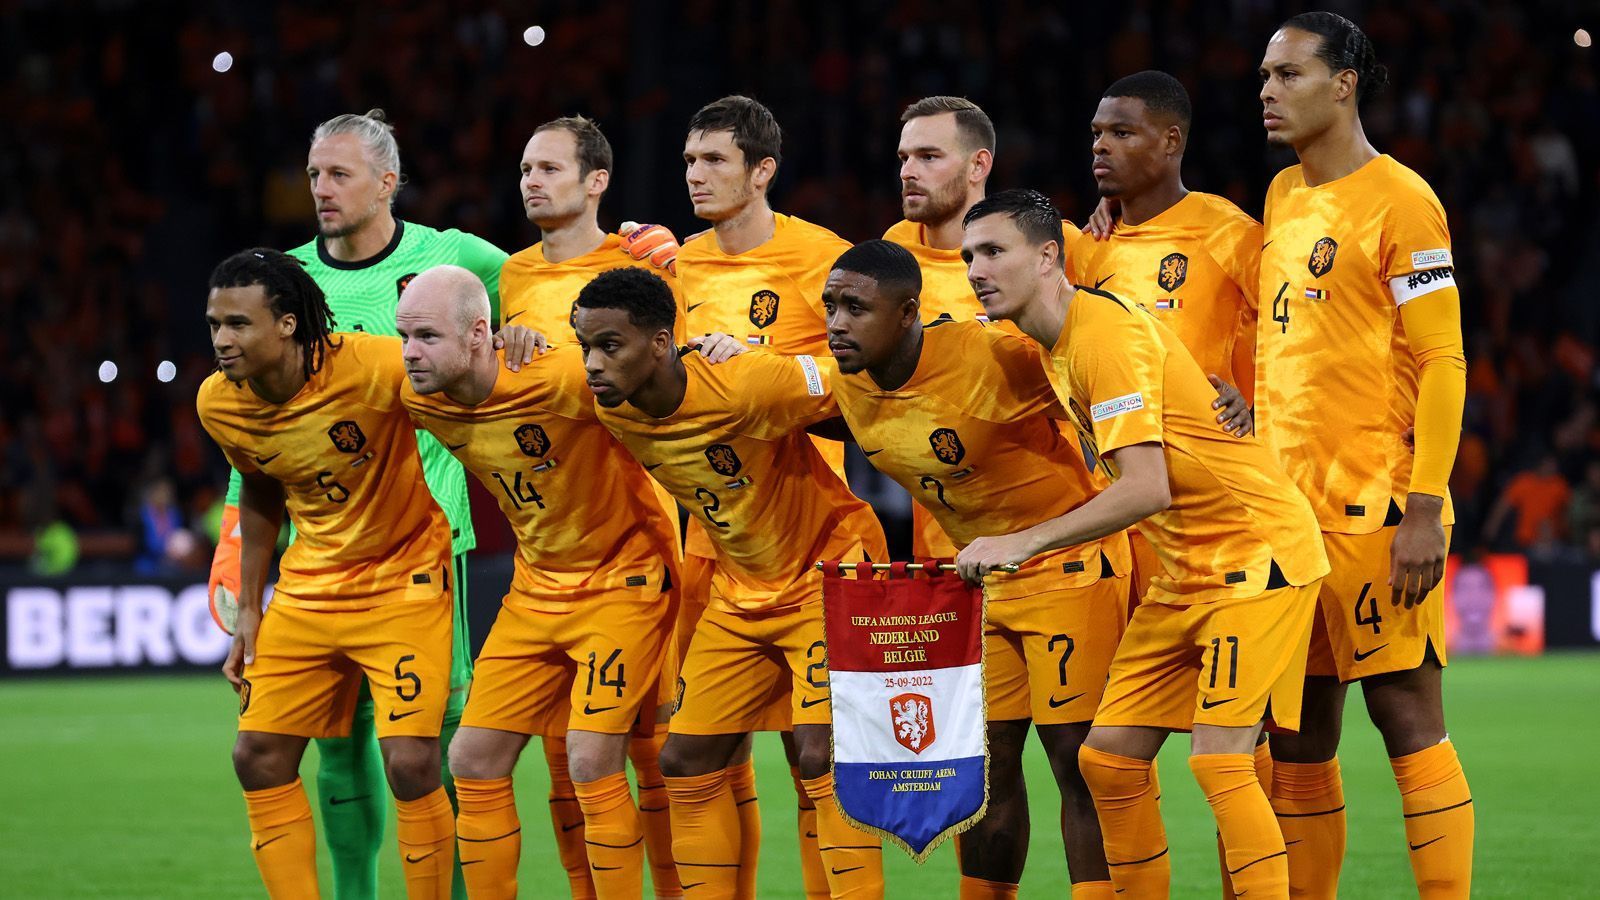 
                <strong>Platz 5: Niederlande</strong><br>
                Den Niederlanden ergeht es wie bei jeder WM, an der sie teilnehmen. Immer vorne mit dabei, aber für den ganz großen Wurf reicht es am Ende einfach nicht. Das Trikot der "Oranje" ist wie immer sehr modern, aber dennoch schlicht. Die Konkurrenz ist aber mal wieder ein Stück besser.
              